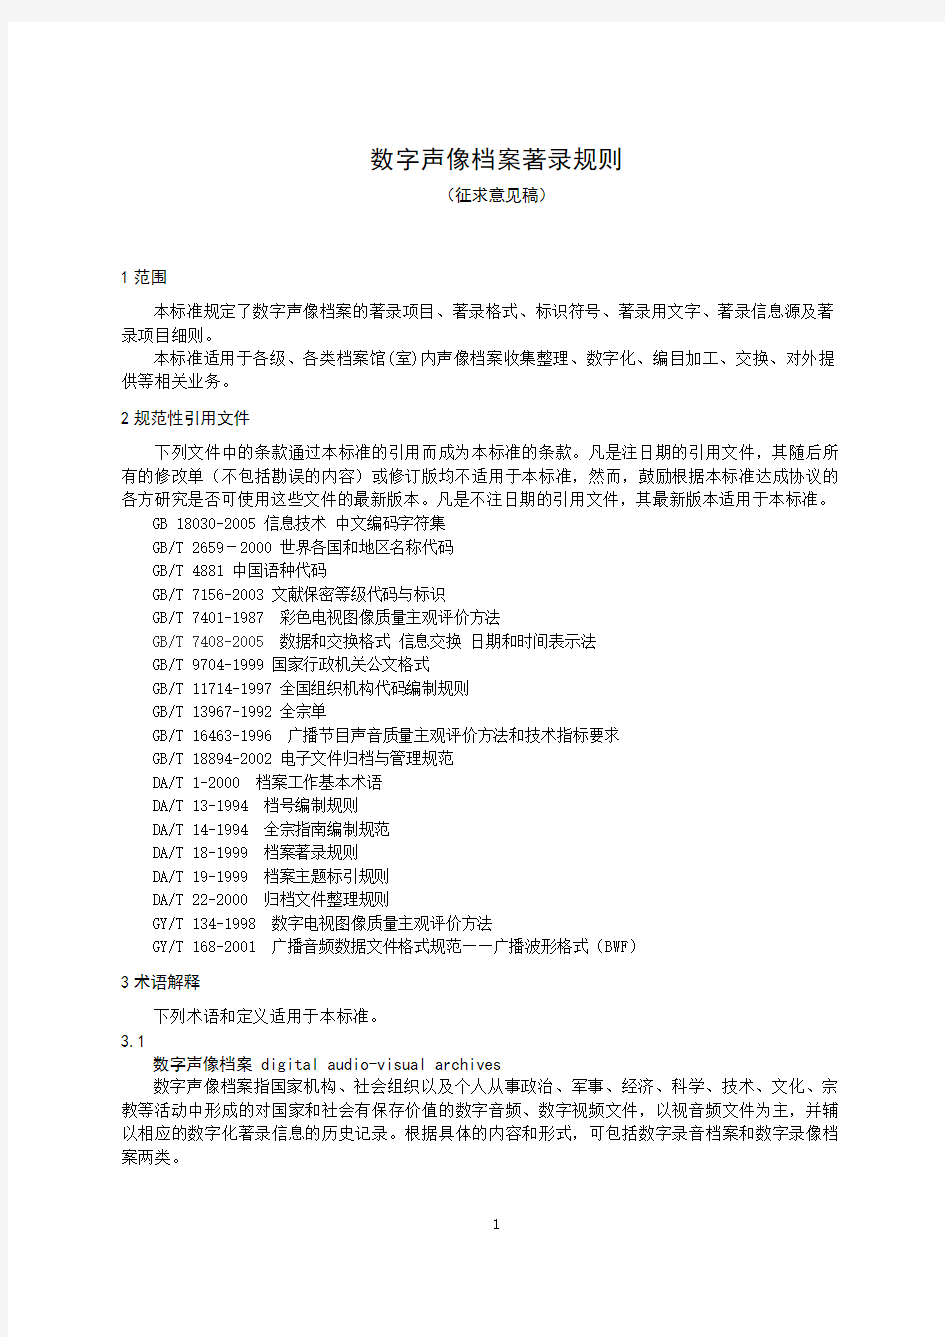 中华人民共和国数字声像档案著录规则